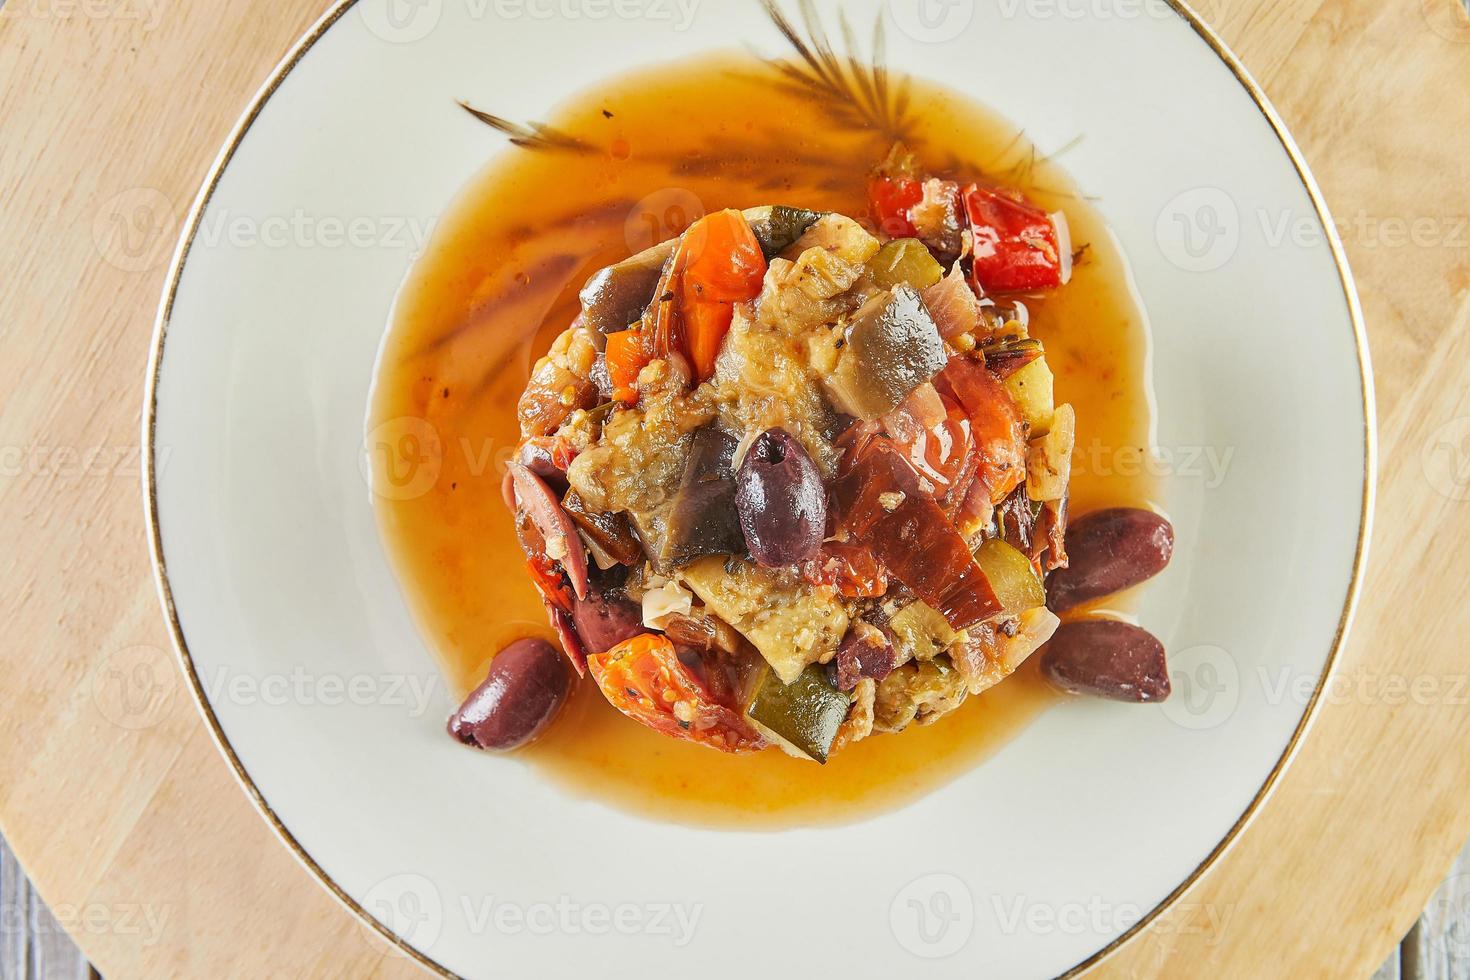 ragoût de ratatouille aux courgettes, courgettes, aubergines, poivrons et tomates cerises. décoré d'olives. cuisine gastronomique française photo